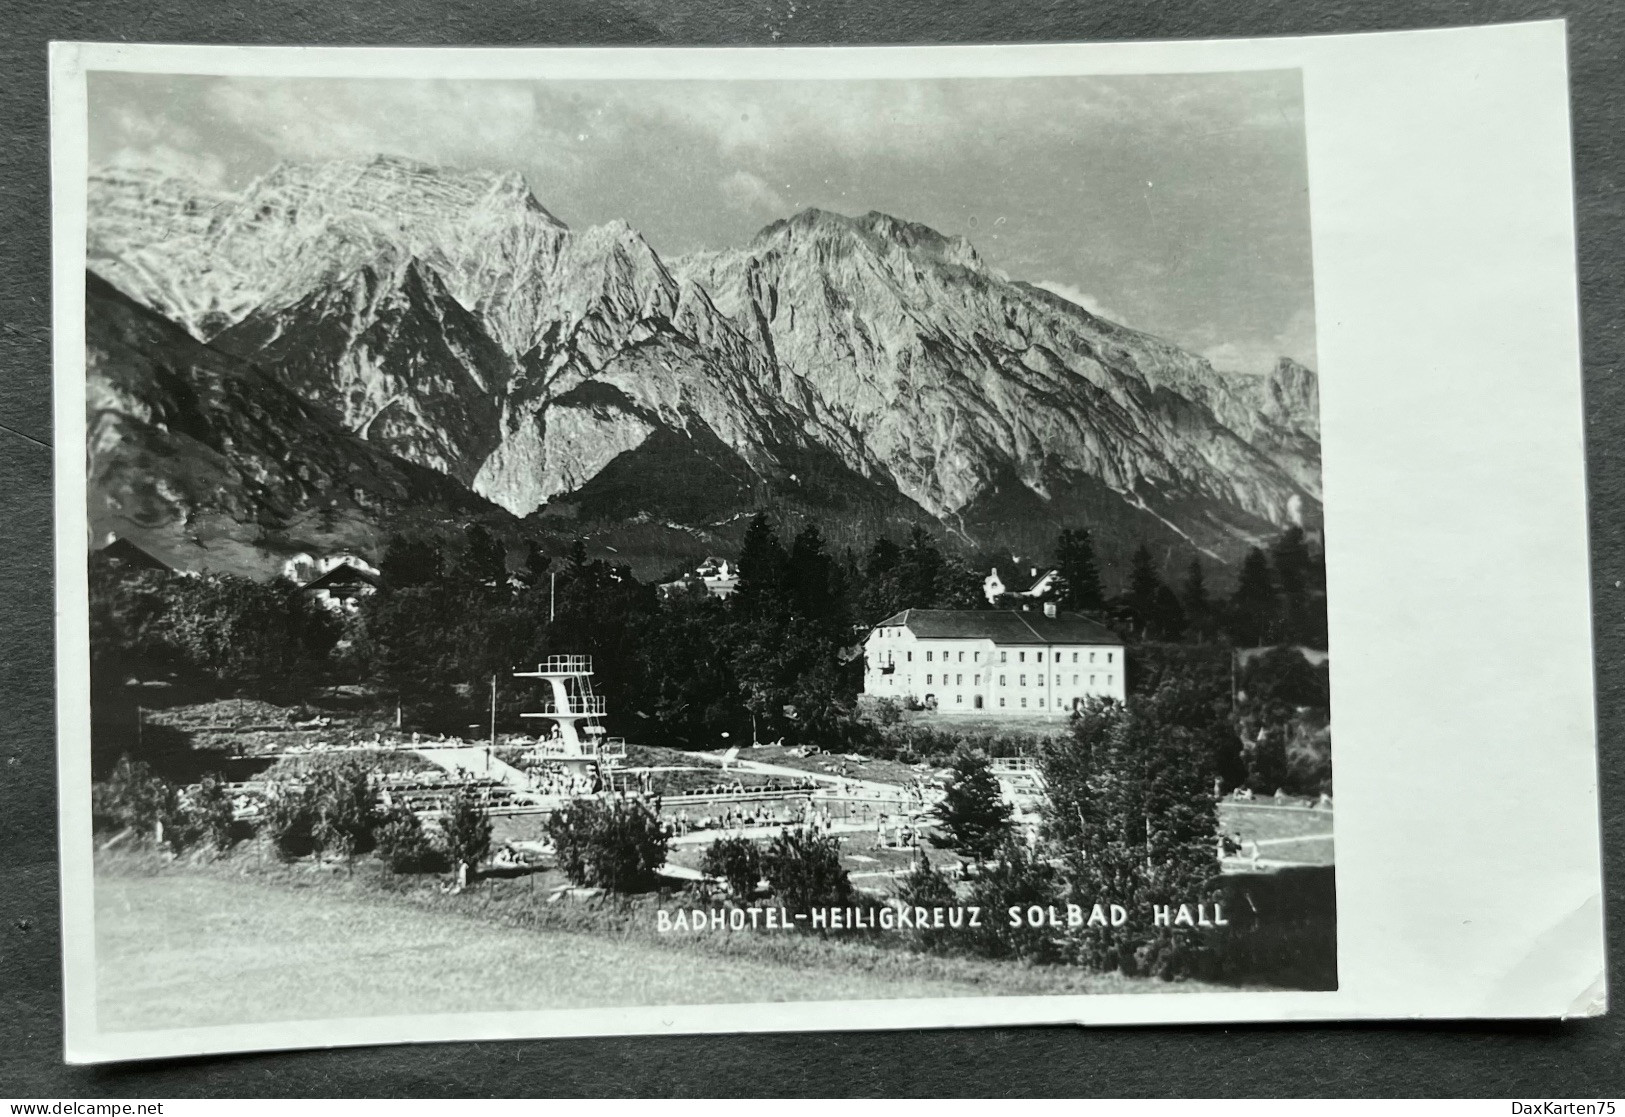 SOLBAD HALL Badhotel Heiligkreuz/ Schwimmbad Mit Sprungturm/ Fotokarte - Hall In Tirol